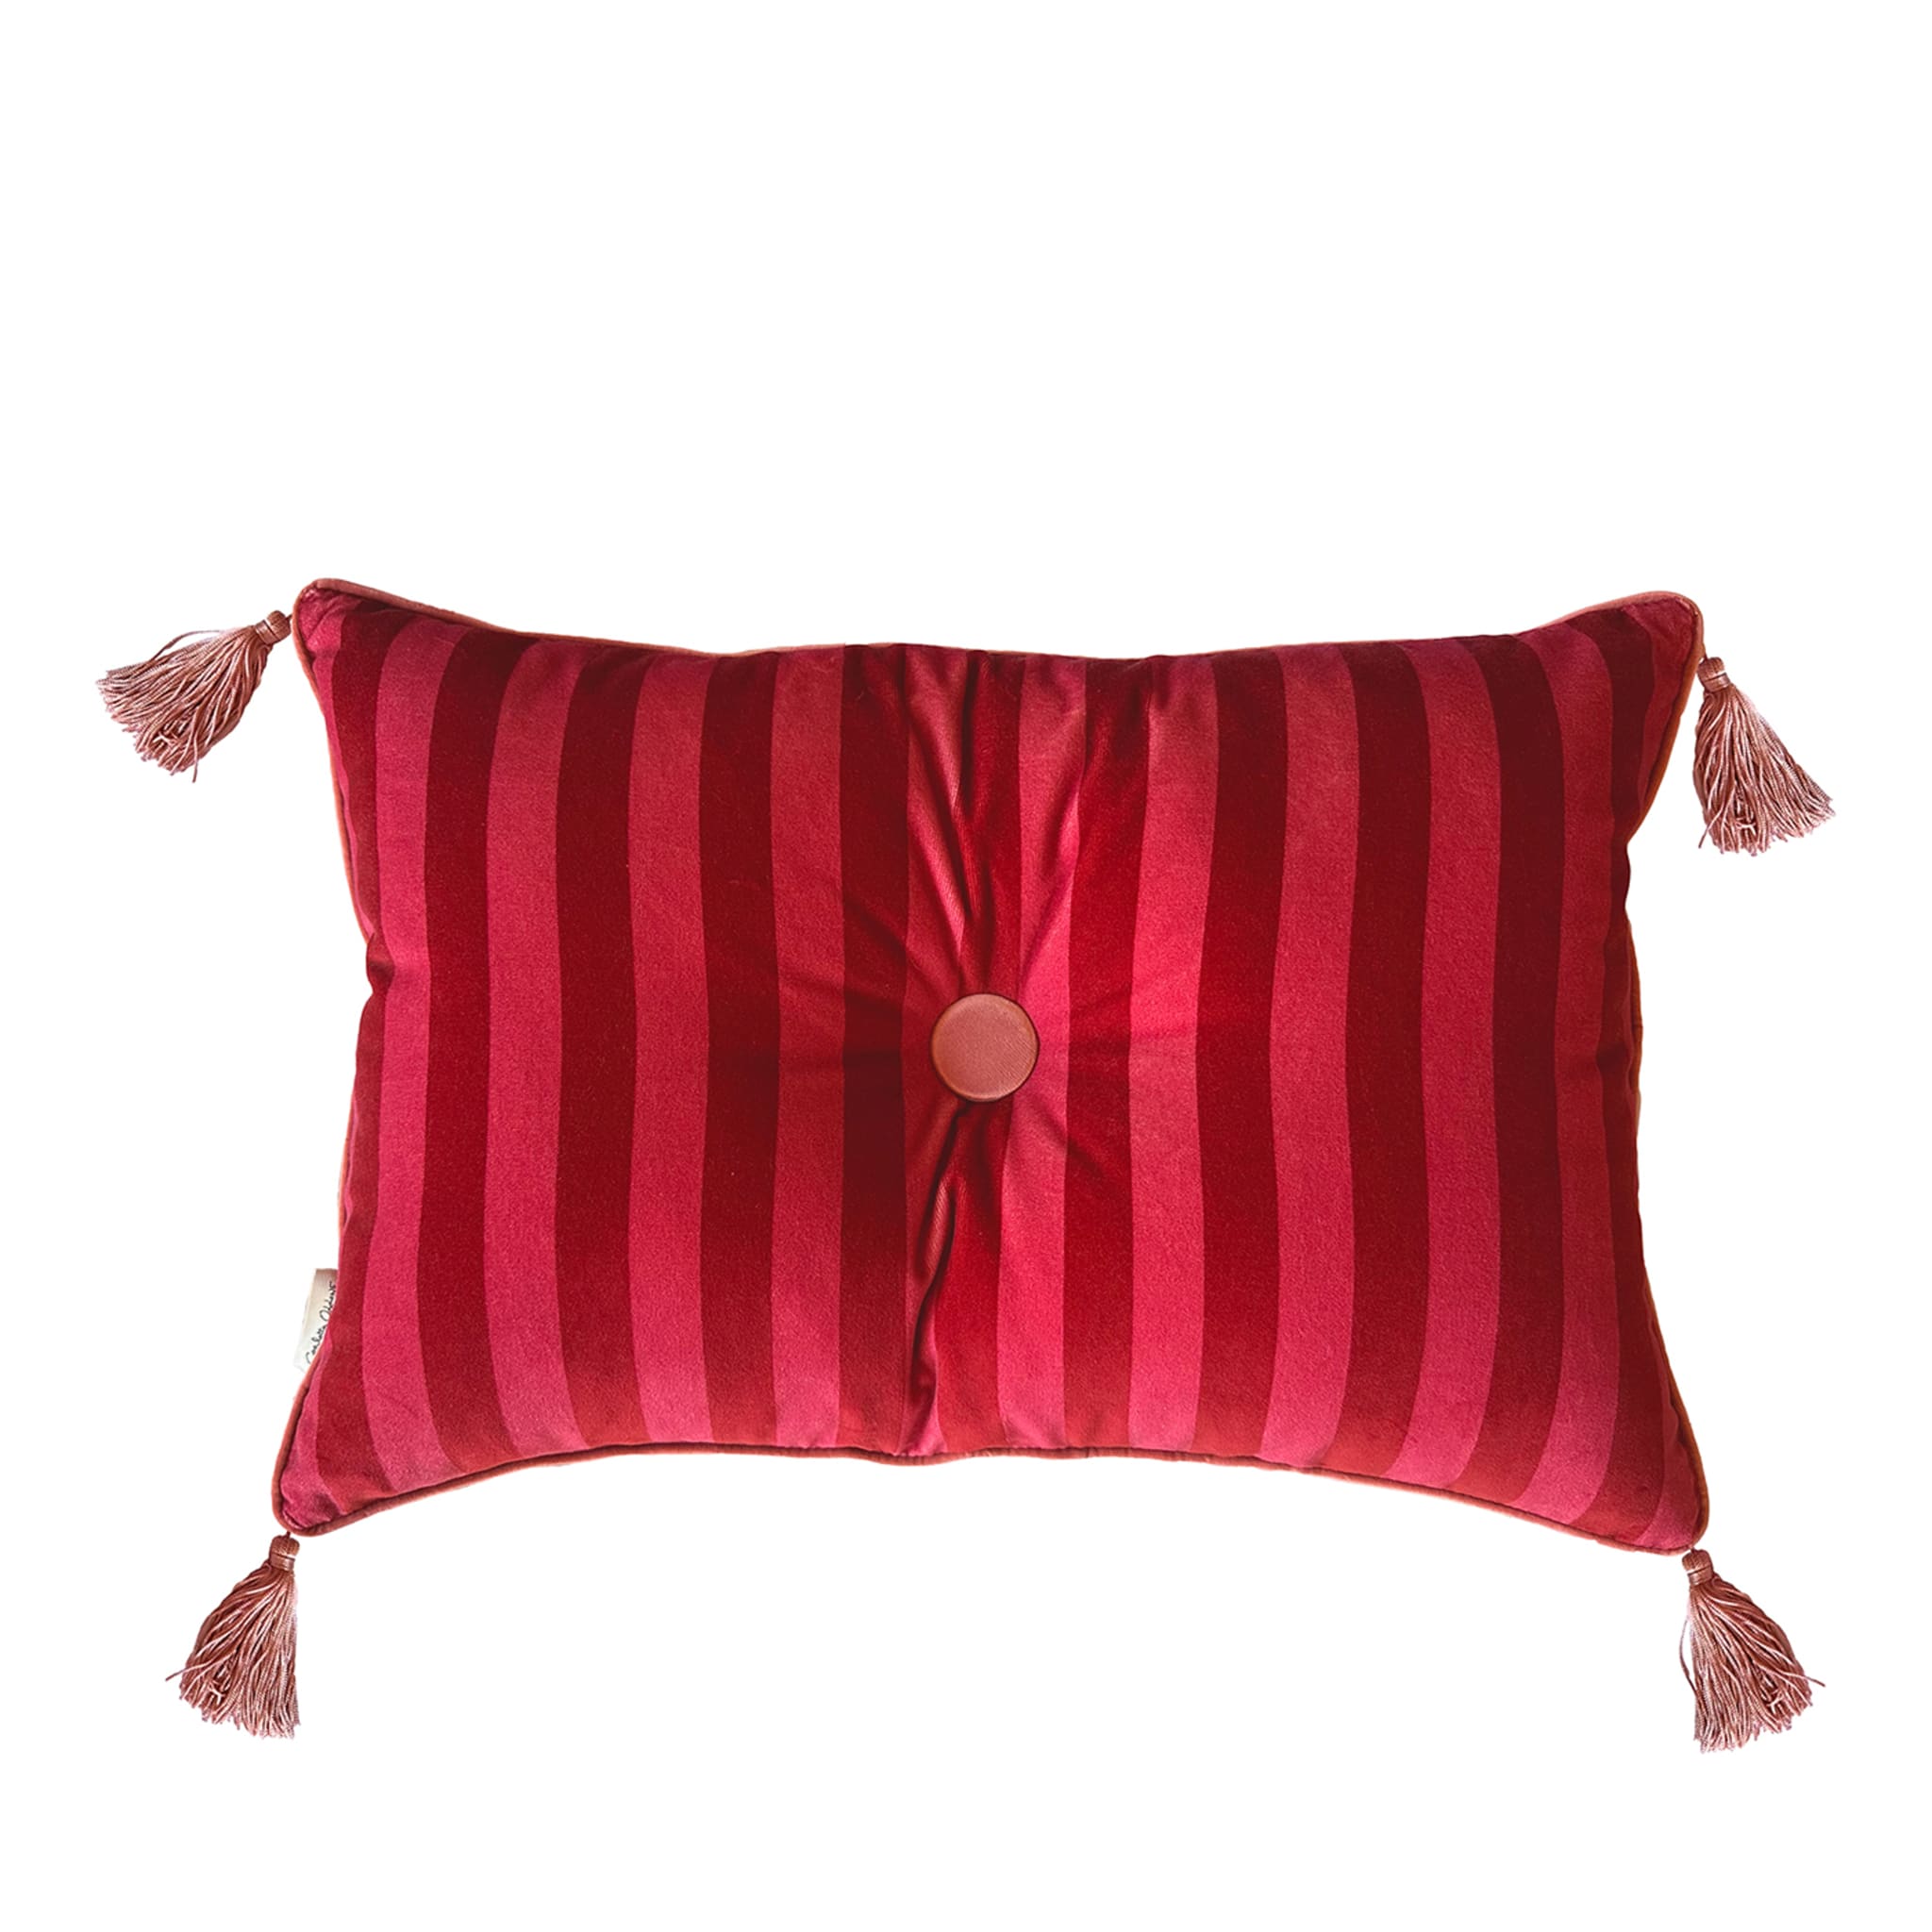 Cuscino Sweet Pillow rettangolare a righe rosso fragola e ciliegia - Vista principale